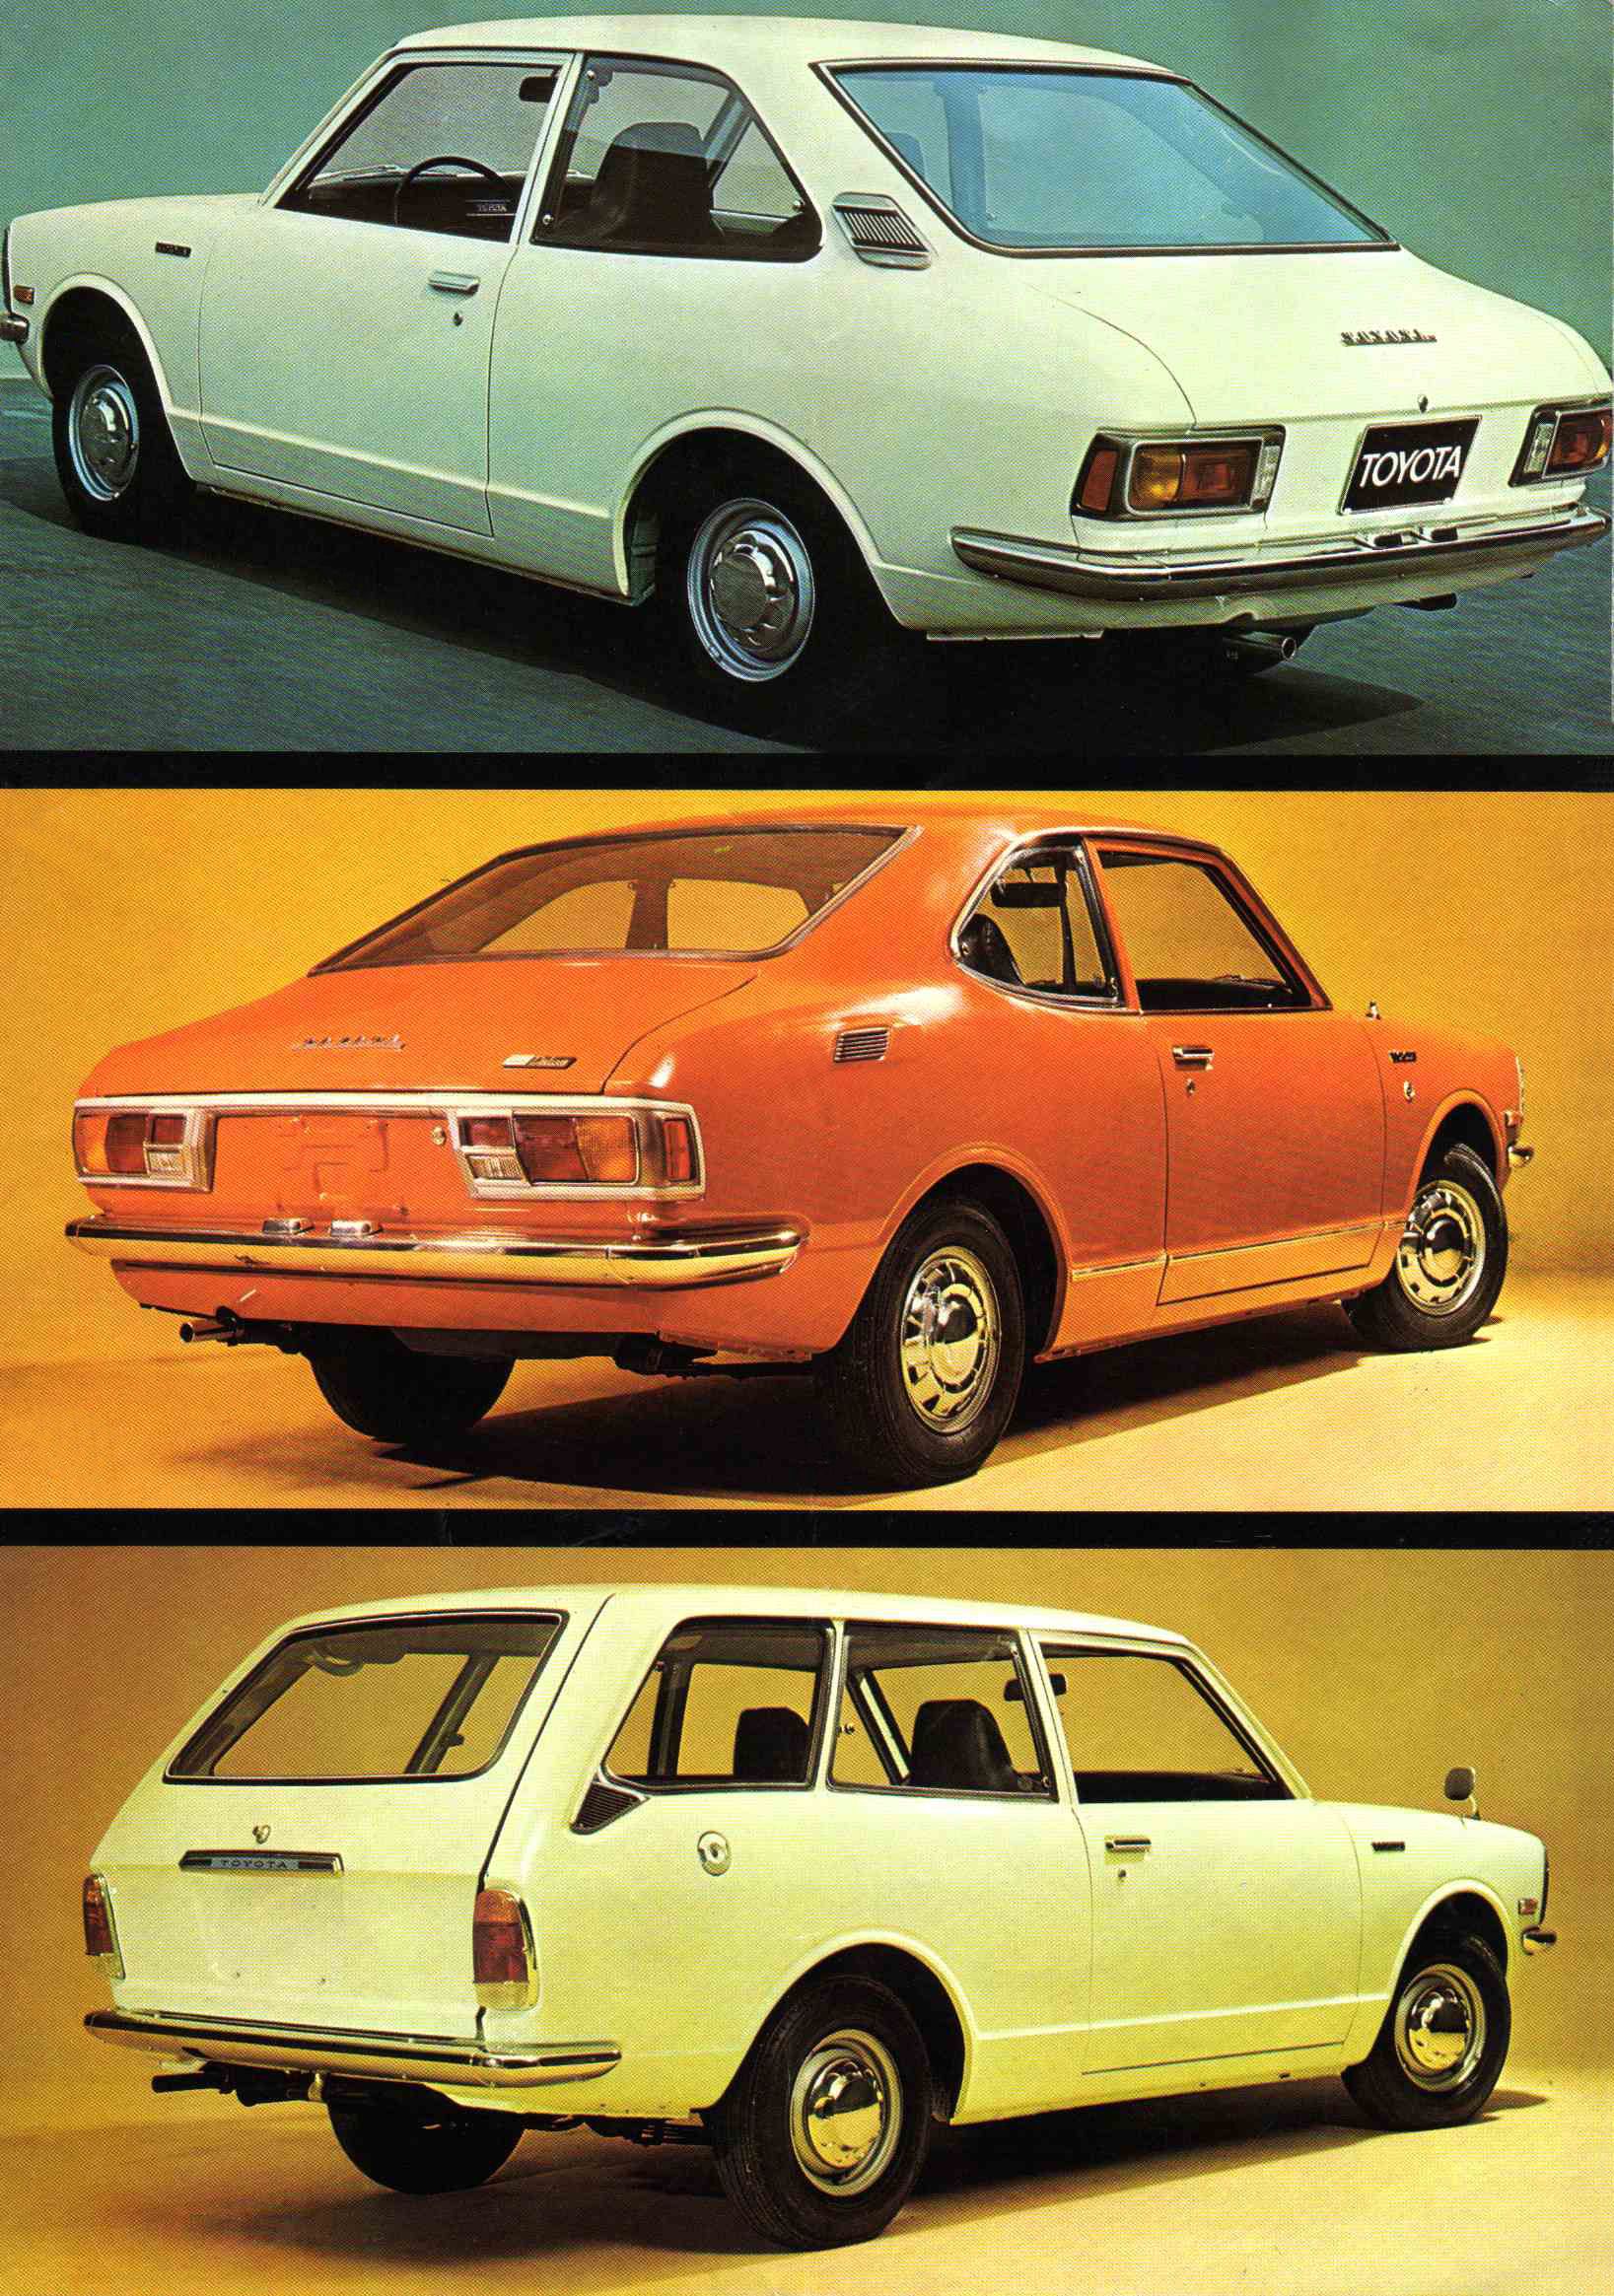 1973 Toyota Corolla brochure